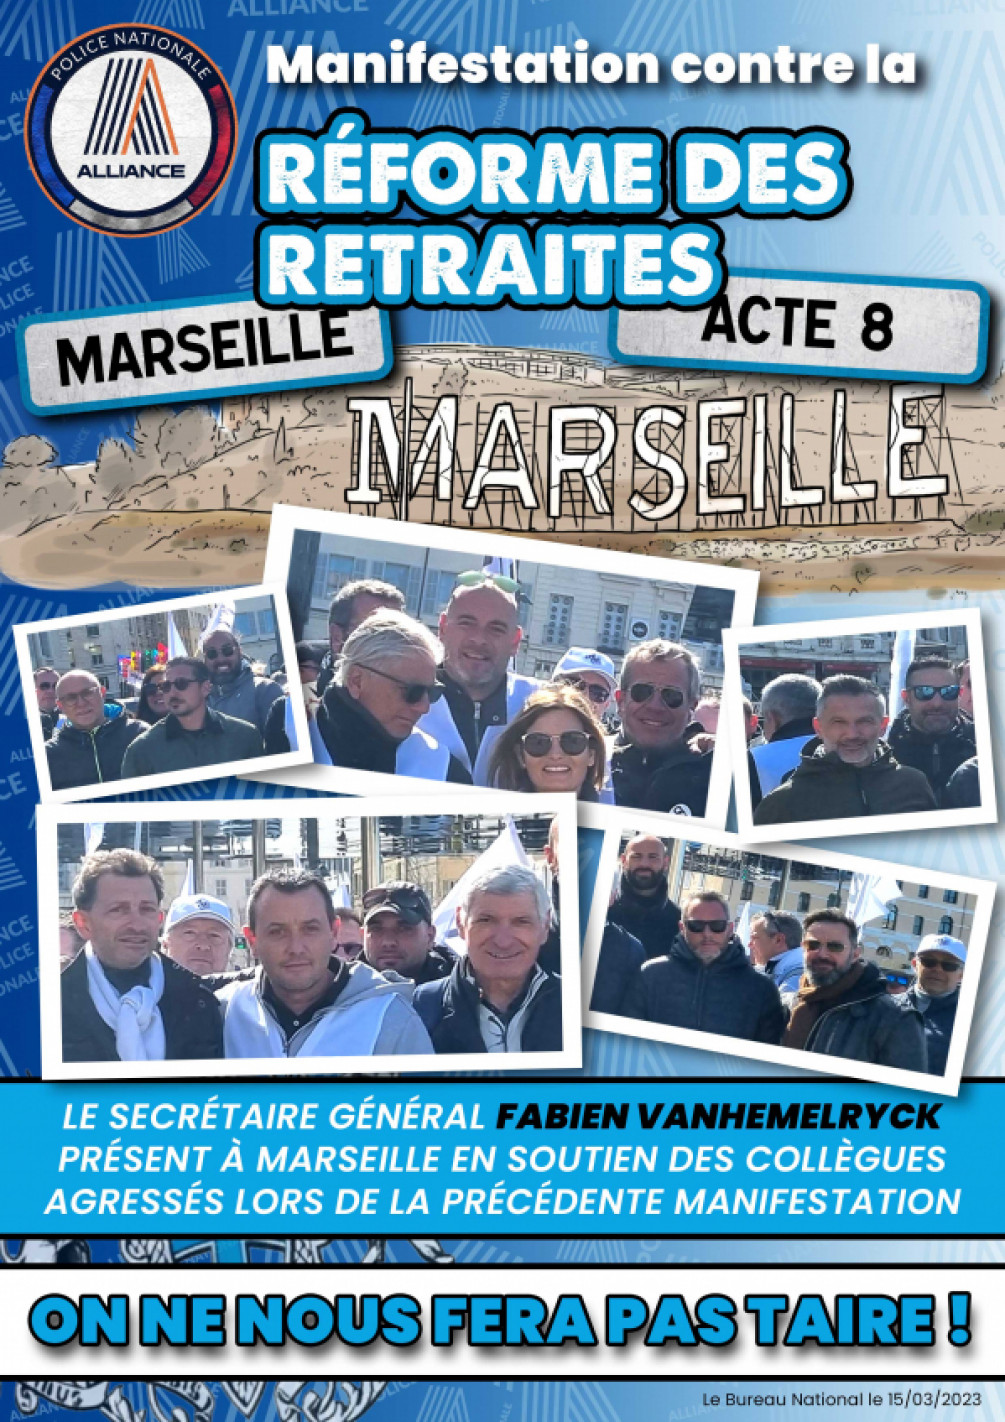 Le secrétaire général Fabien Vanhemelryck présent à Marseille en soutien des collègues agressés lors de la précédente manifestation